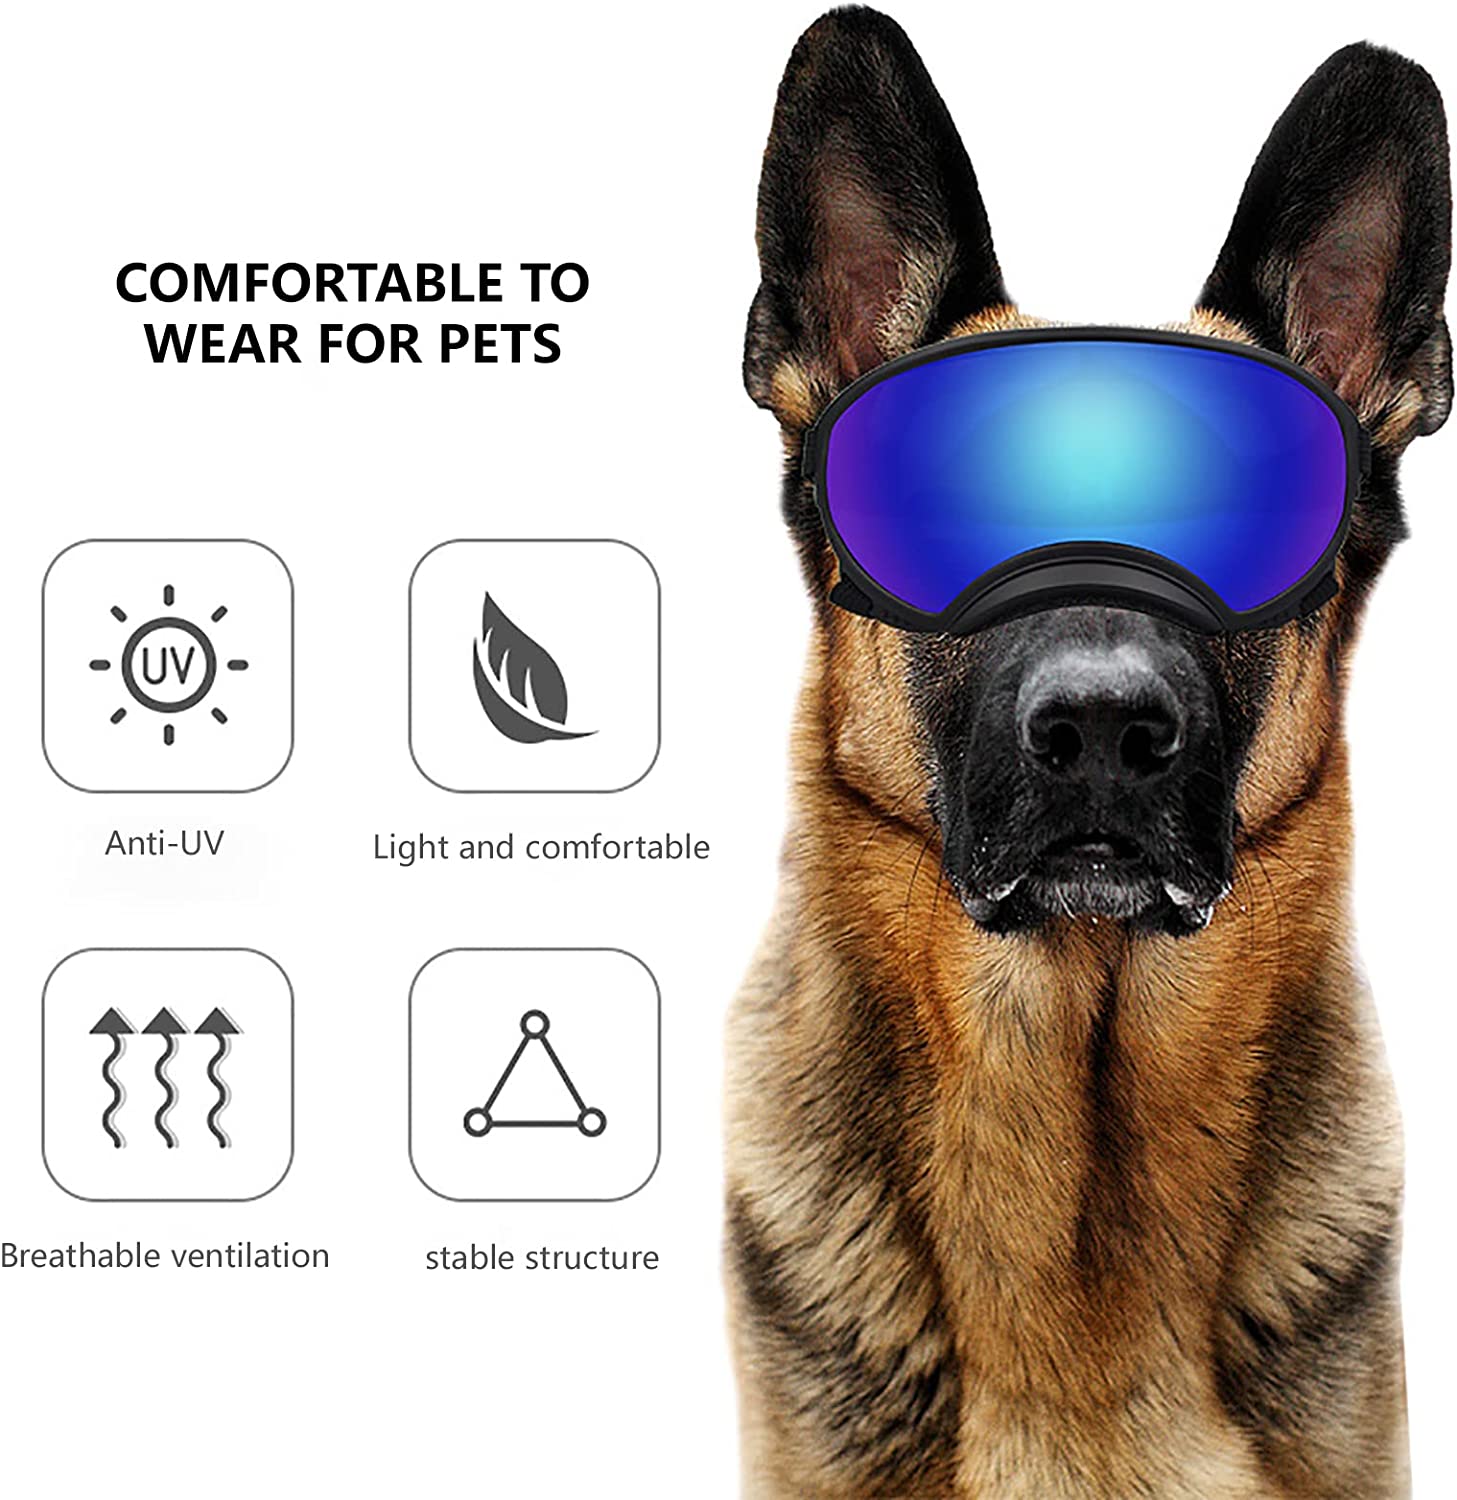  پد فریم نرم در اطراف عینک آفتابی برای راحتی و سازگاری با پوست. ساختار داخلی جادار به چشم سگ شما فشار نمی آورد